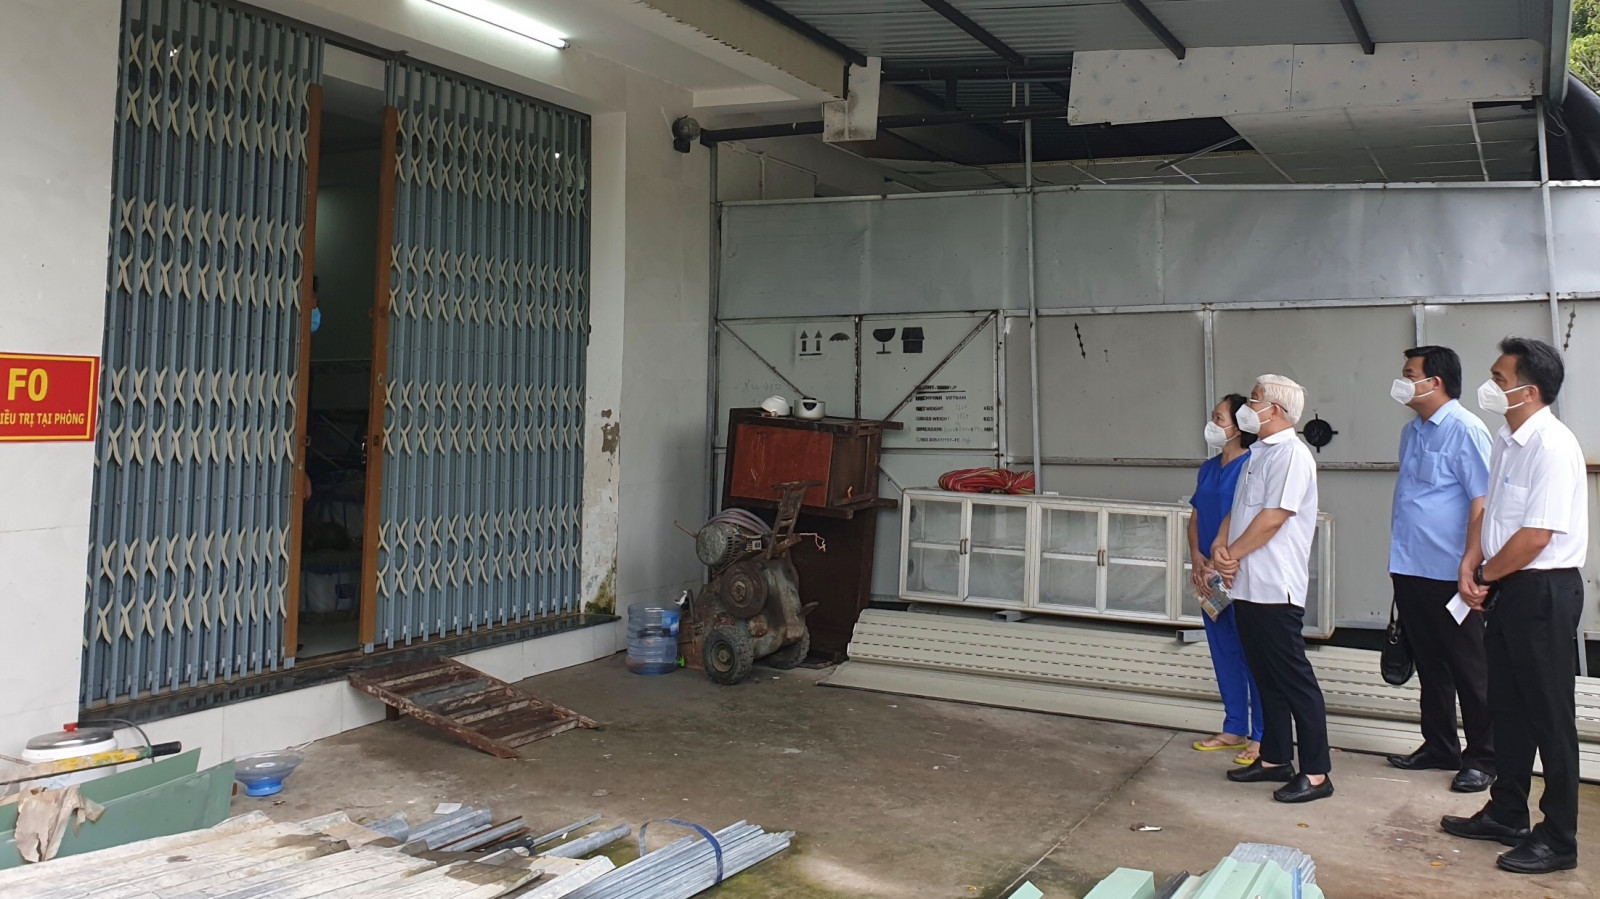 Đoàn công tác Tỉnh ủy thăm bệnh nhân F0 đang điều trị tại nhà (khu phố Bàu Bàng, thị trấn Lai Uyên).